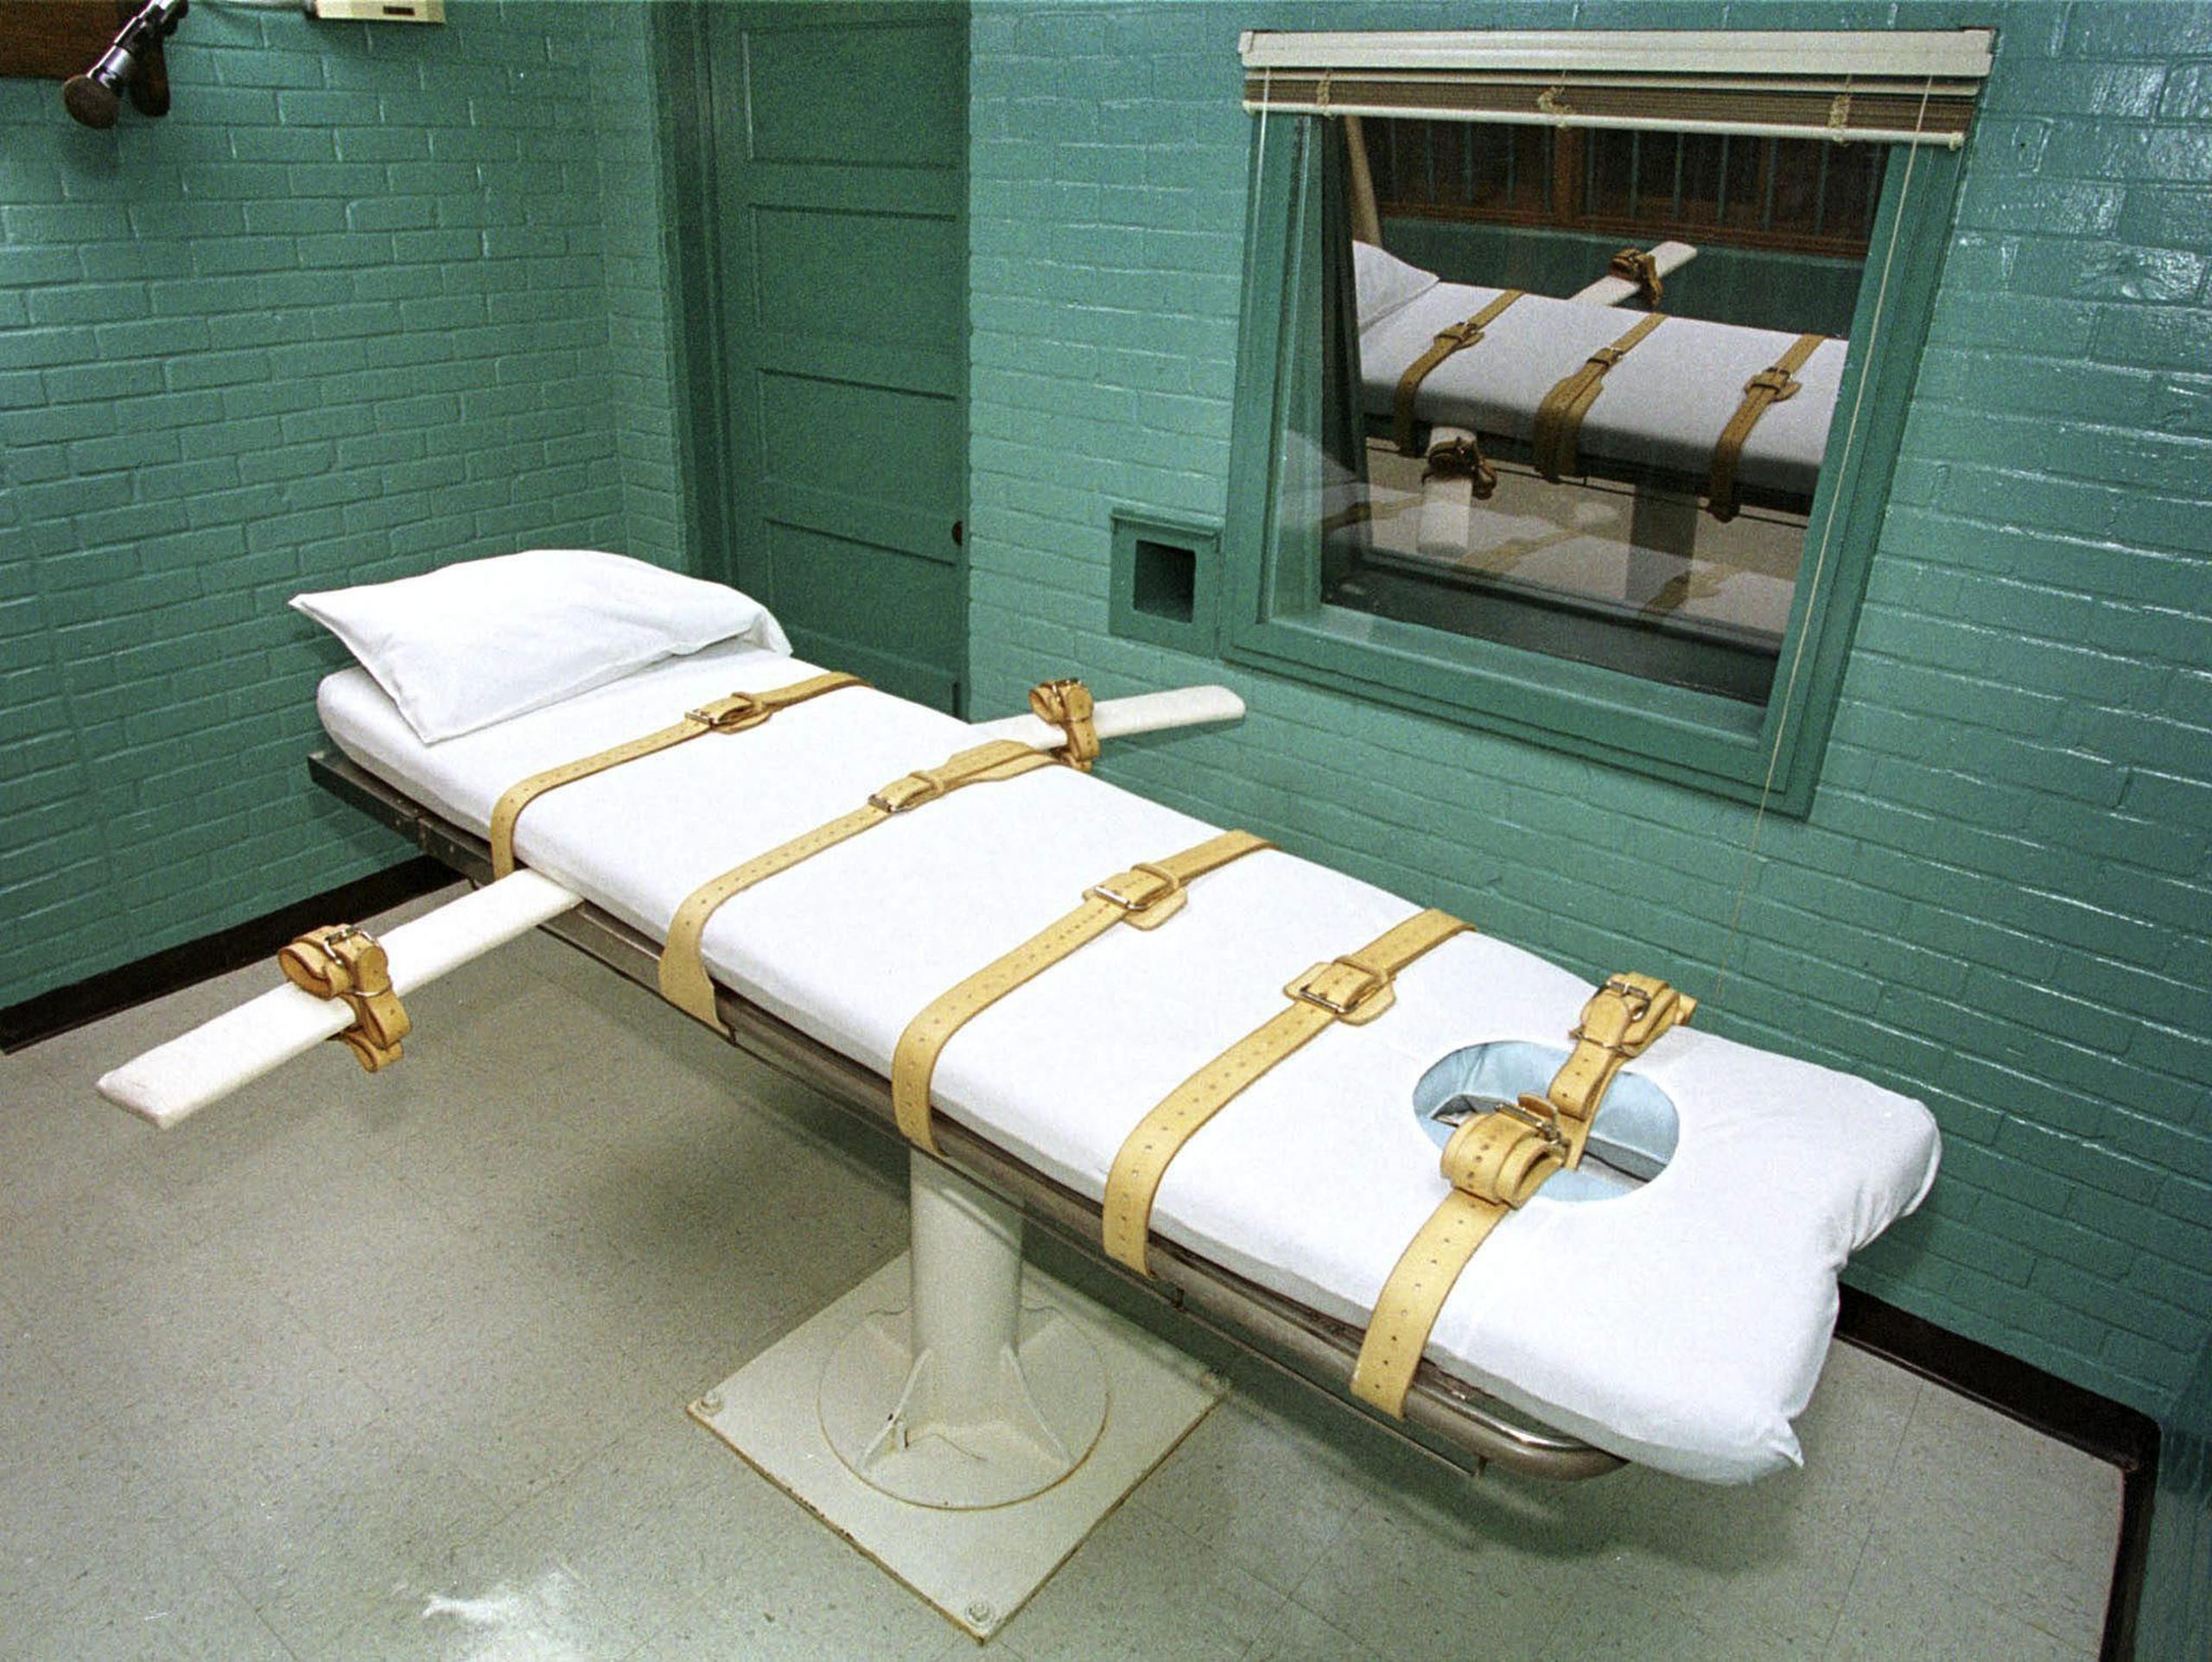 Según datos del Departamento de Correcciones (Prisiones) de Florida, actualmente hay unos 300 presos en el “corredor de la muerte”, como se conoce el lugar donde permanecen los que van a ser ejecutados.